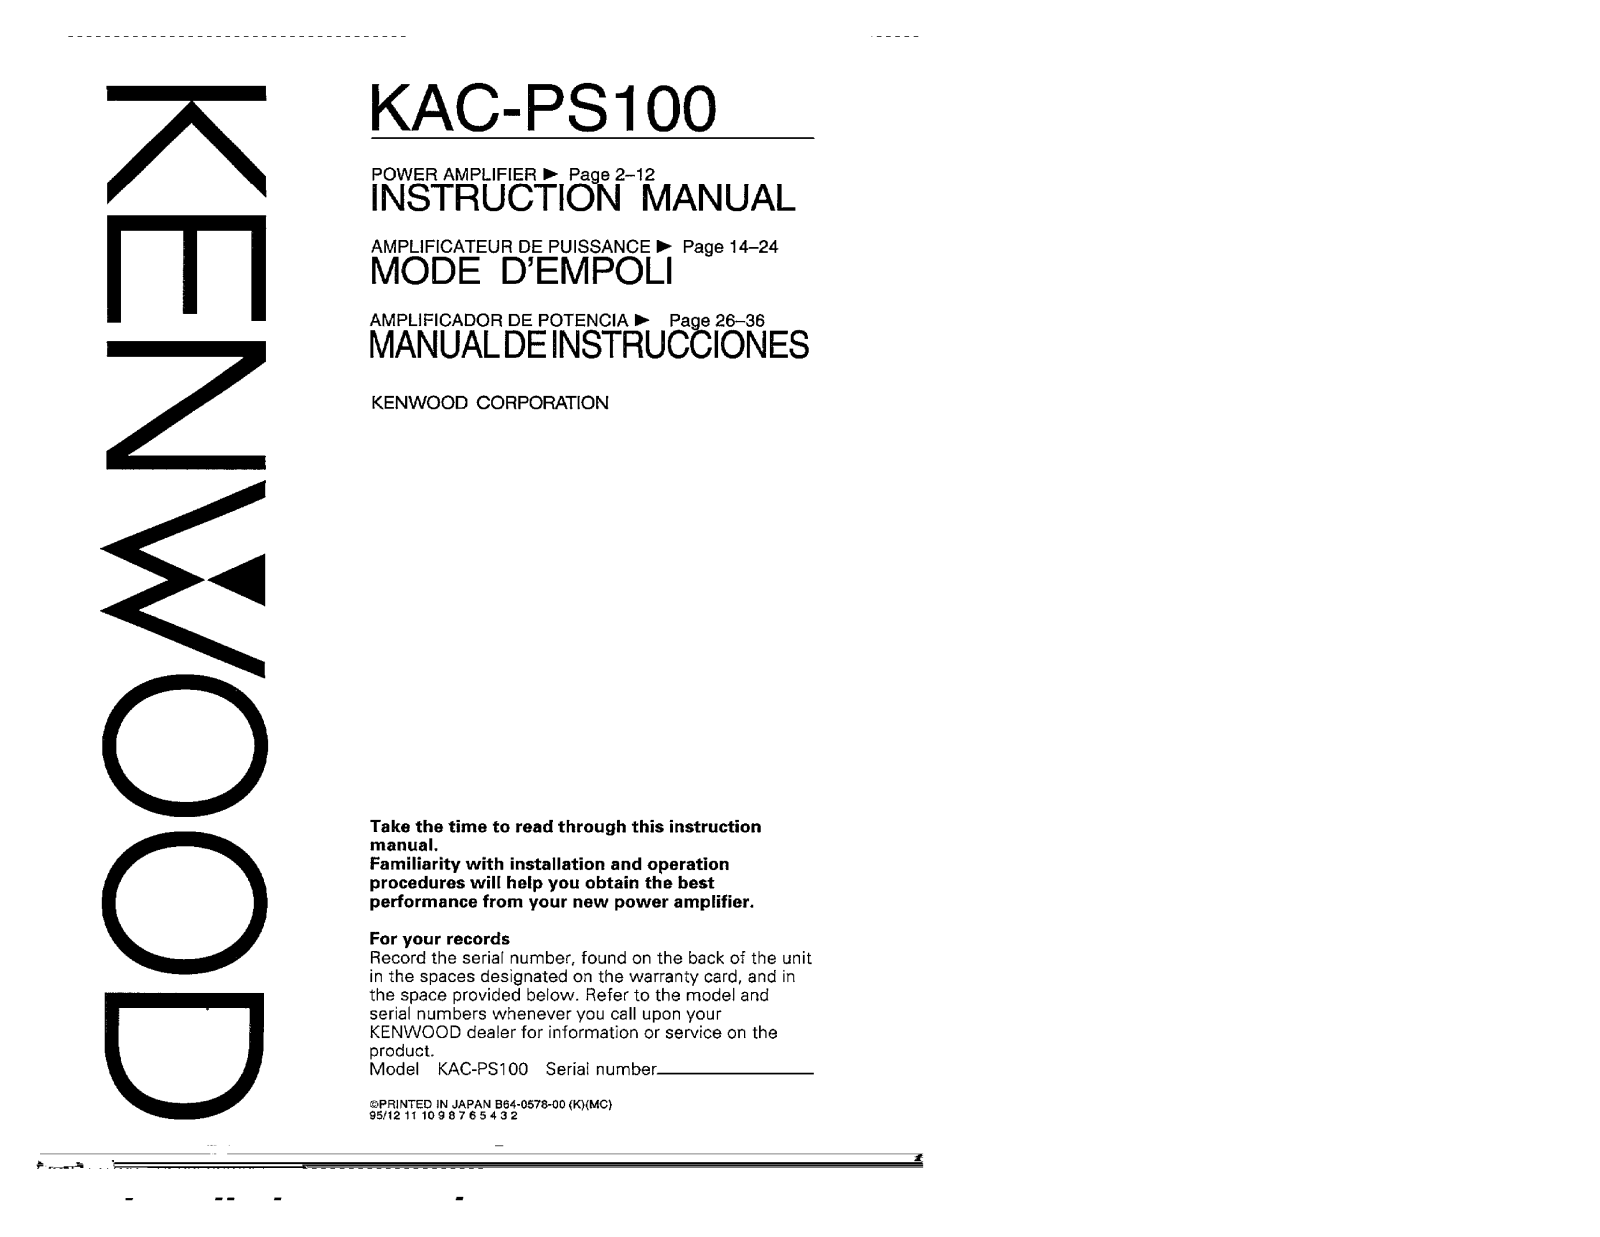 Kenwood KAC-PS100 Owner's Manual